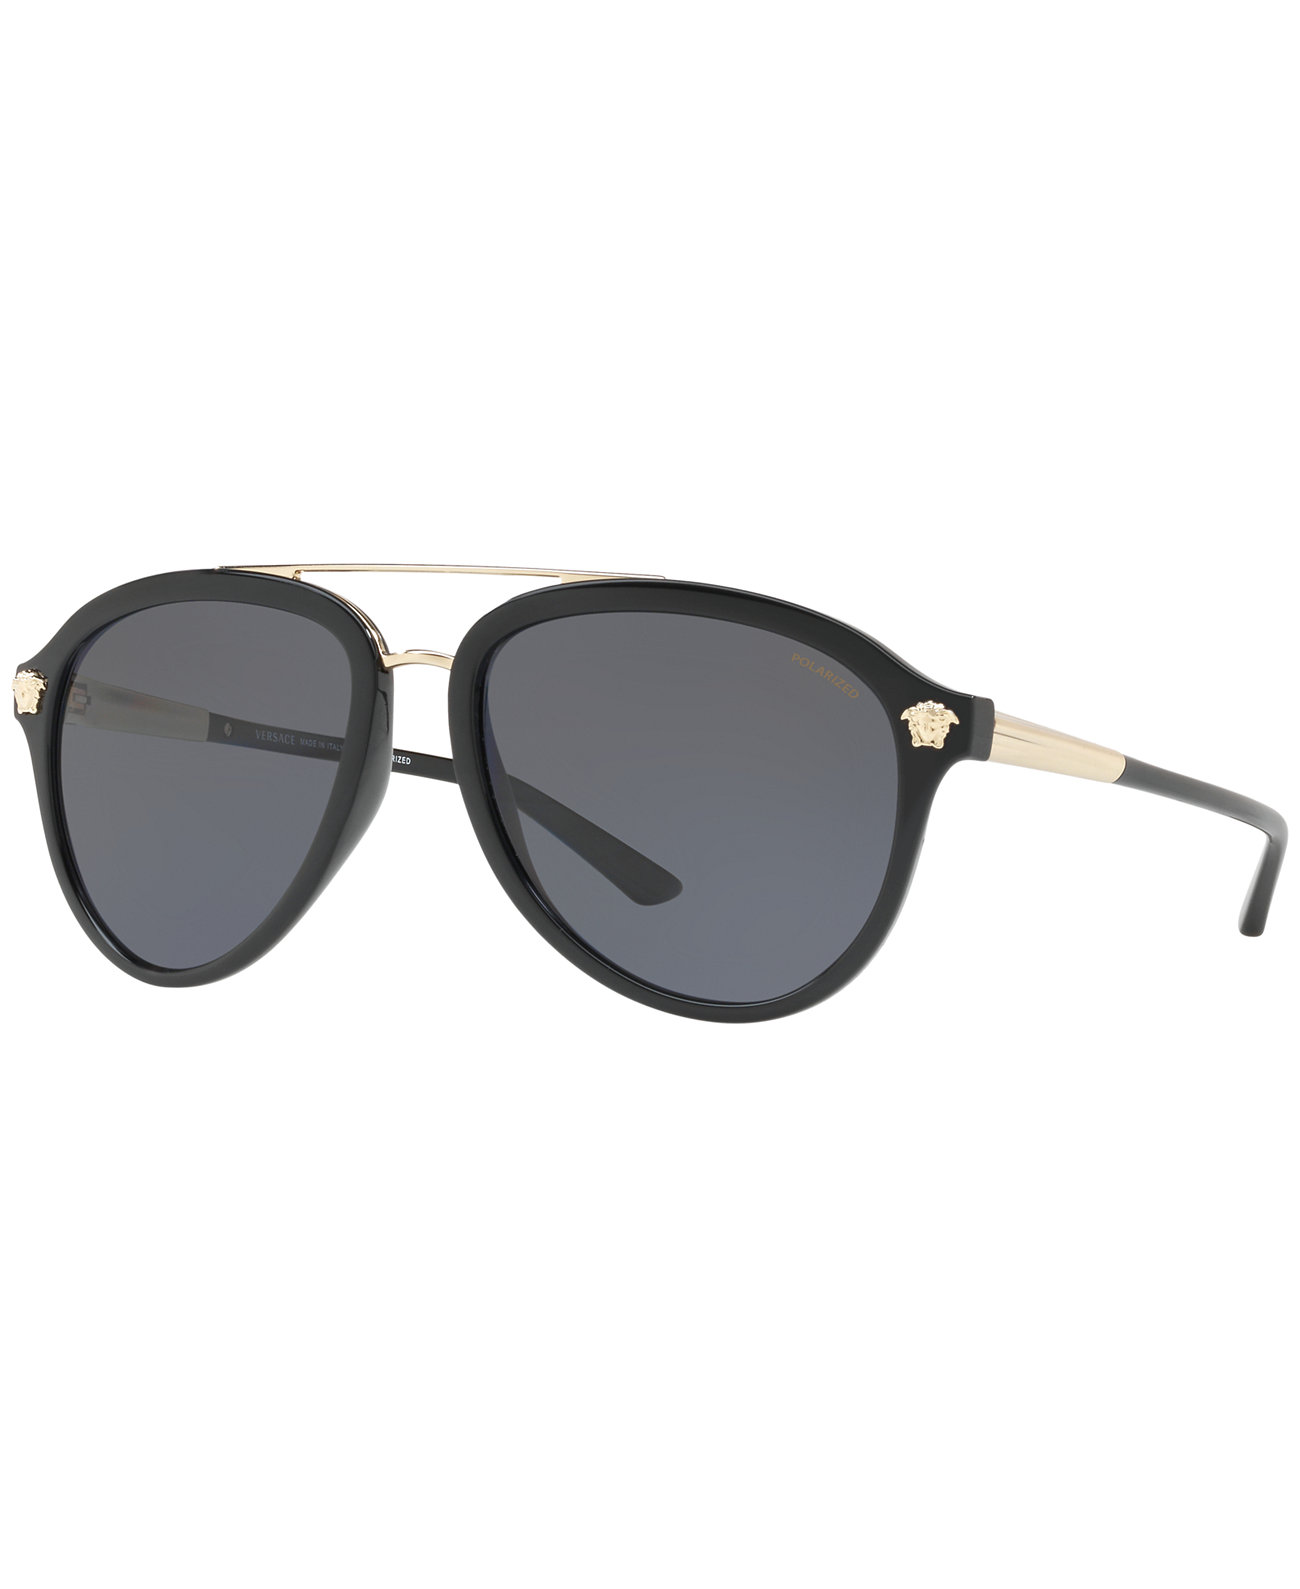 Поляризованные солнцезащитные очки, VE4341 Versace